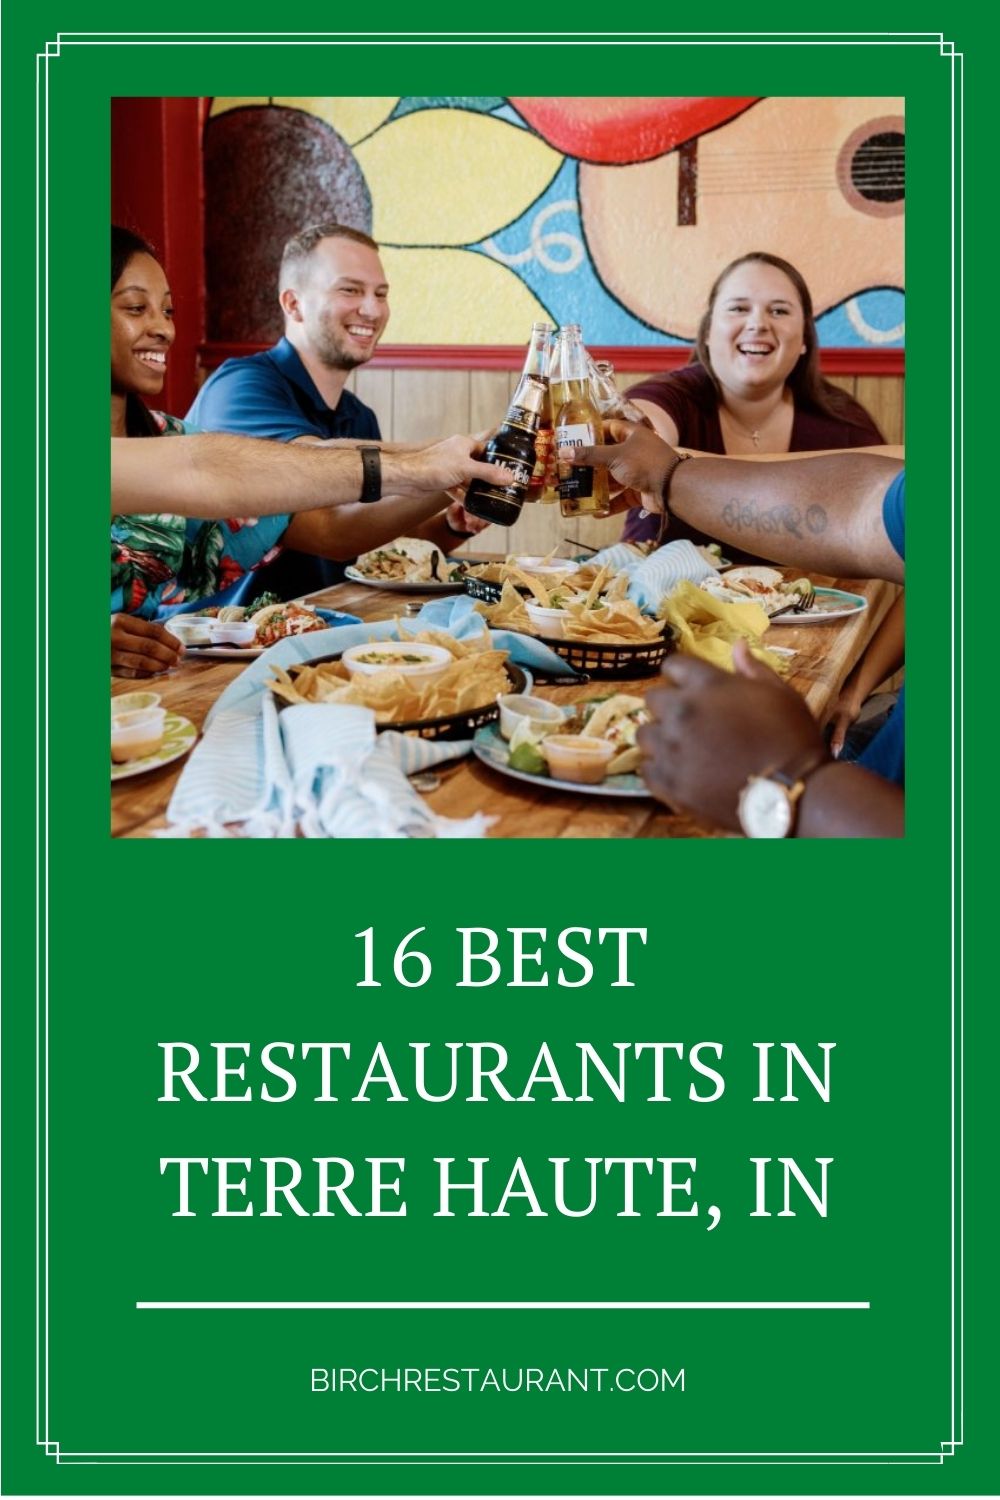 Best Restaurants in Terre Haute